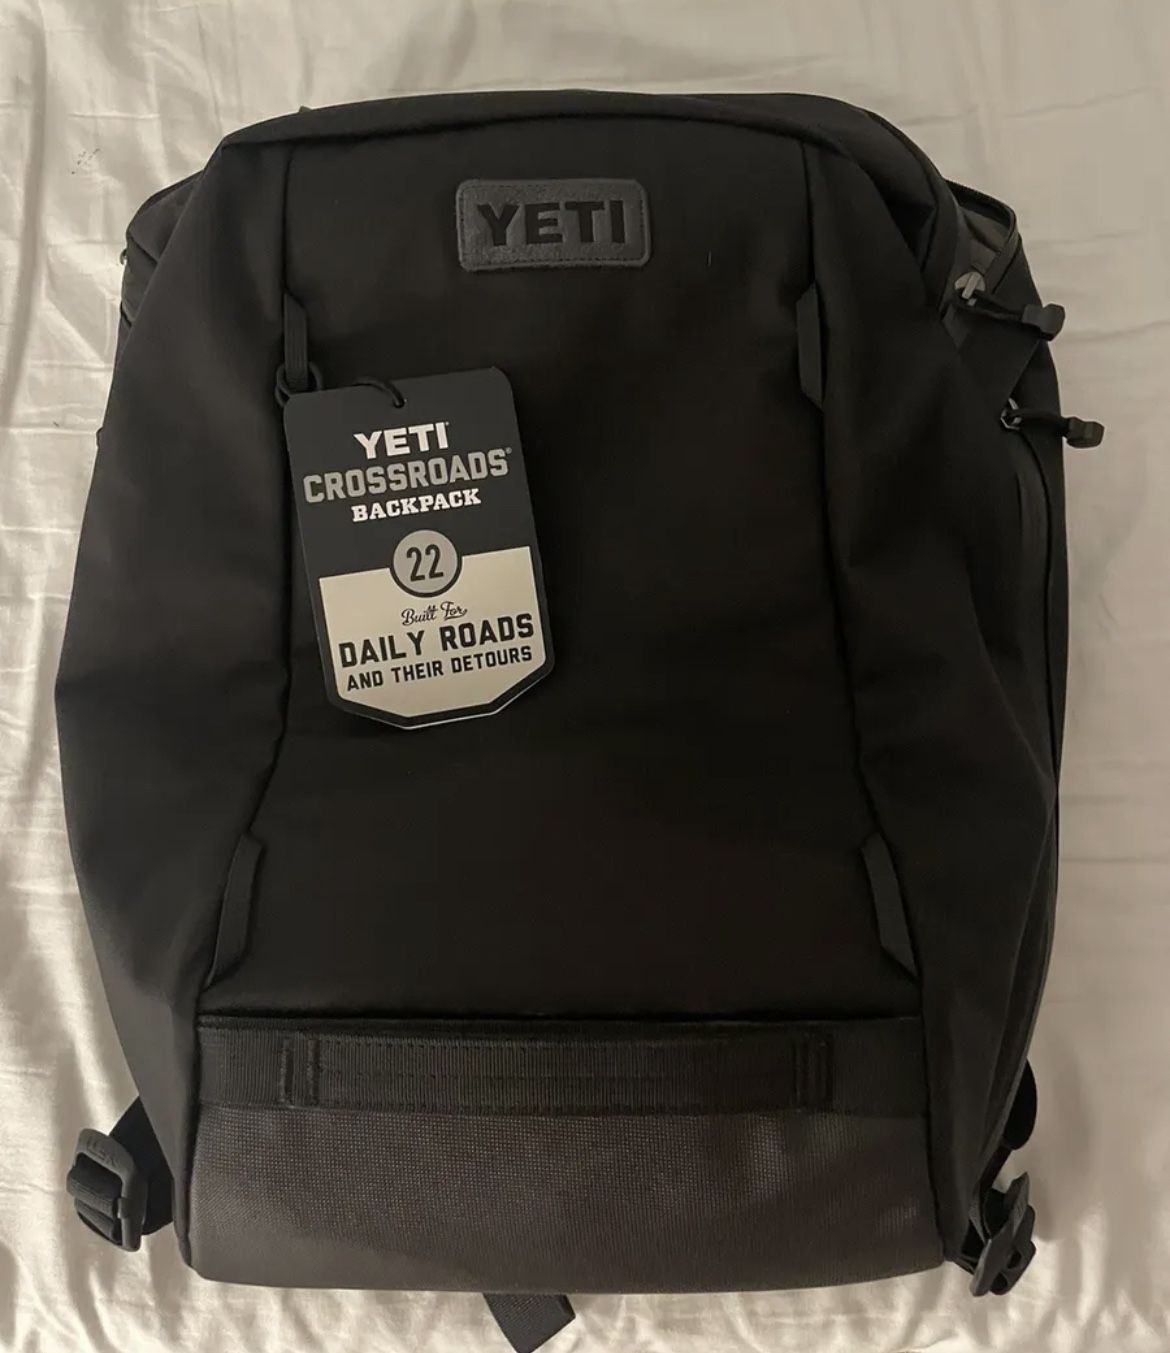 YETI Crossroads Backpack 23